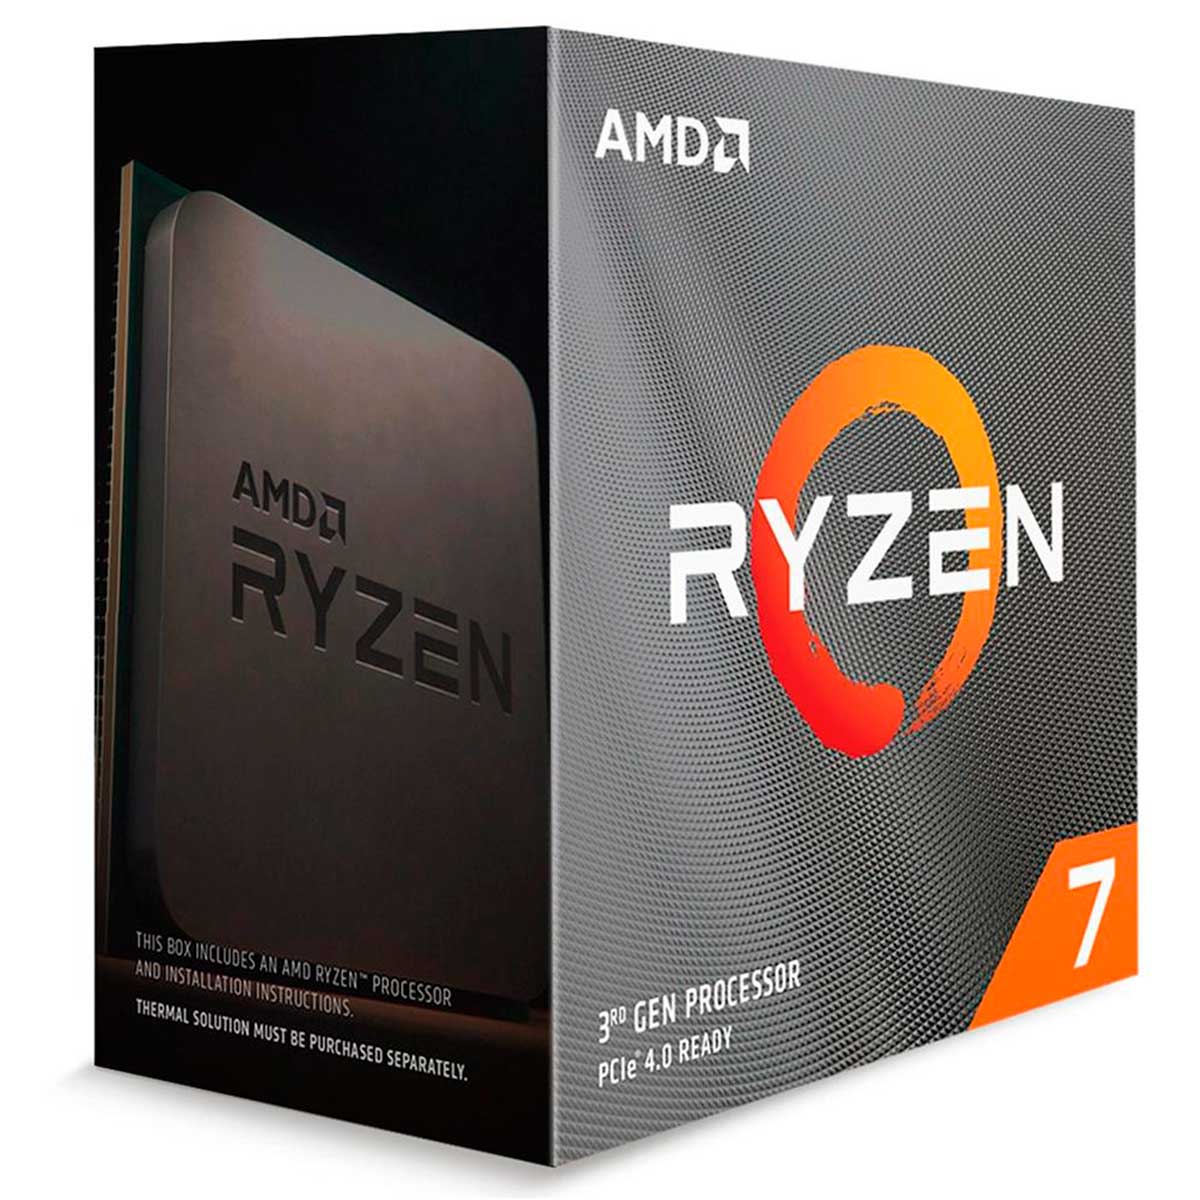 AMD Ryzen 7 3800XT Octa Core - 16 Threads - 3.8GHz (Turbo 4.7GHz) - Cache 36MB - AM4 - 100-100000279WOF